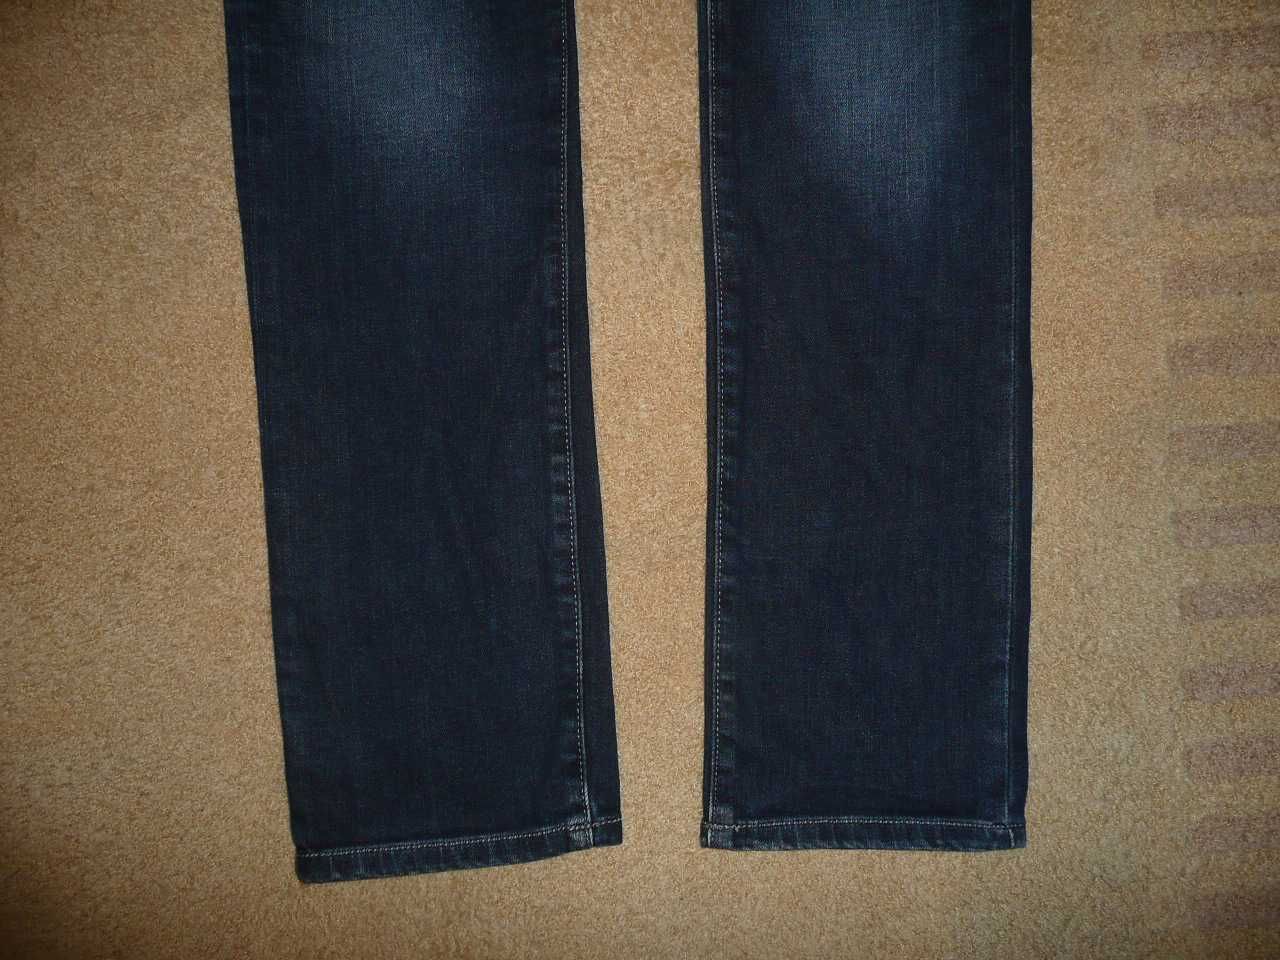 Spodnie dżinsy BIG STAR W32/L34=43,5/111cm jeansy